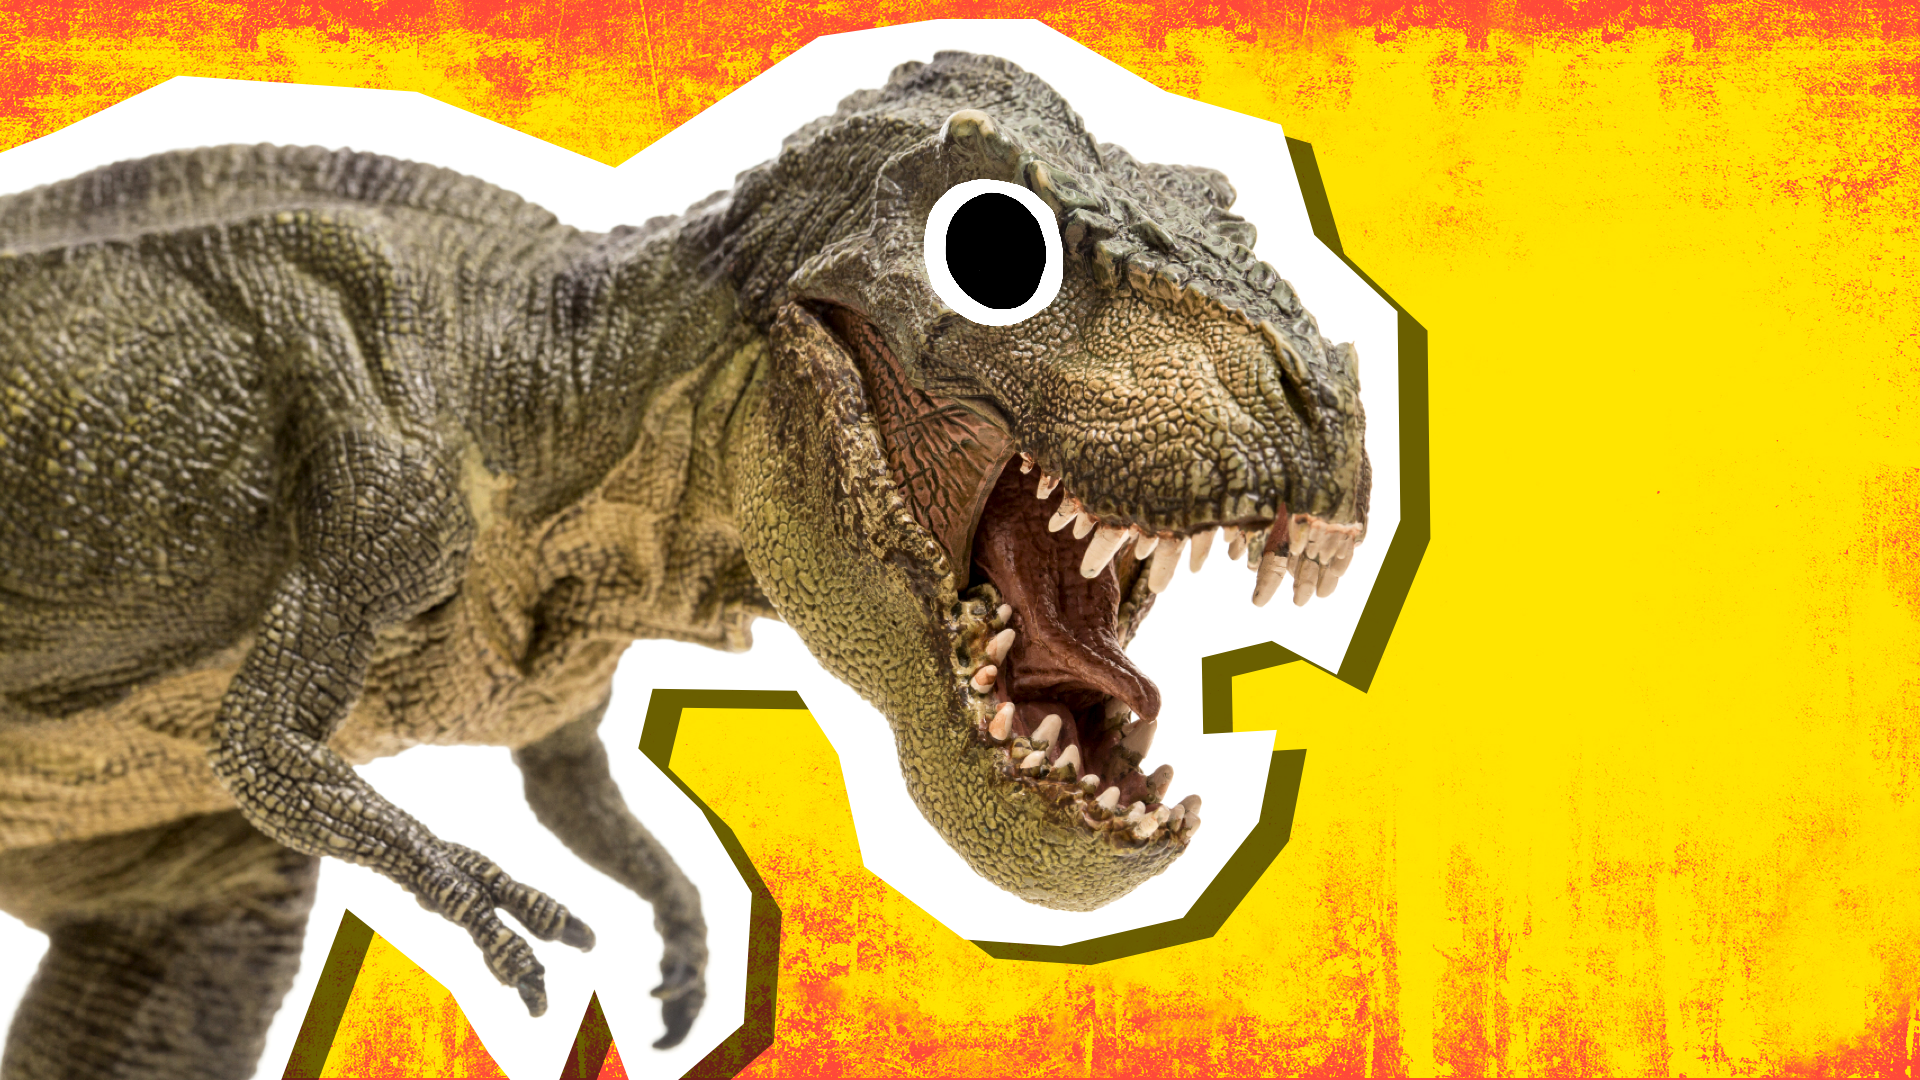 Dinosaur roaring